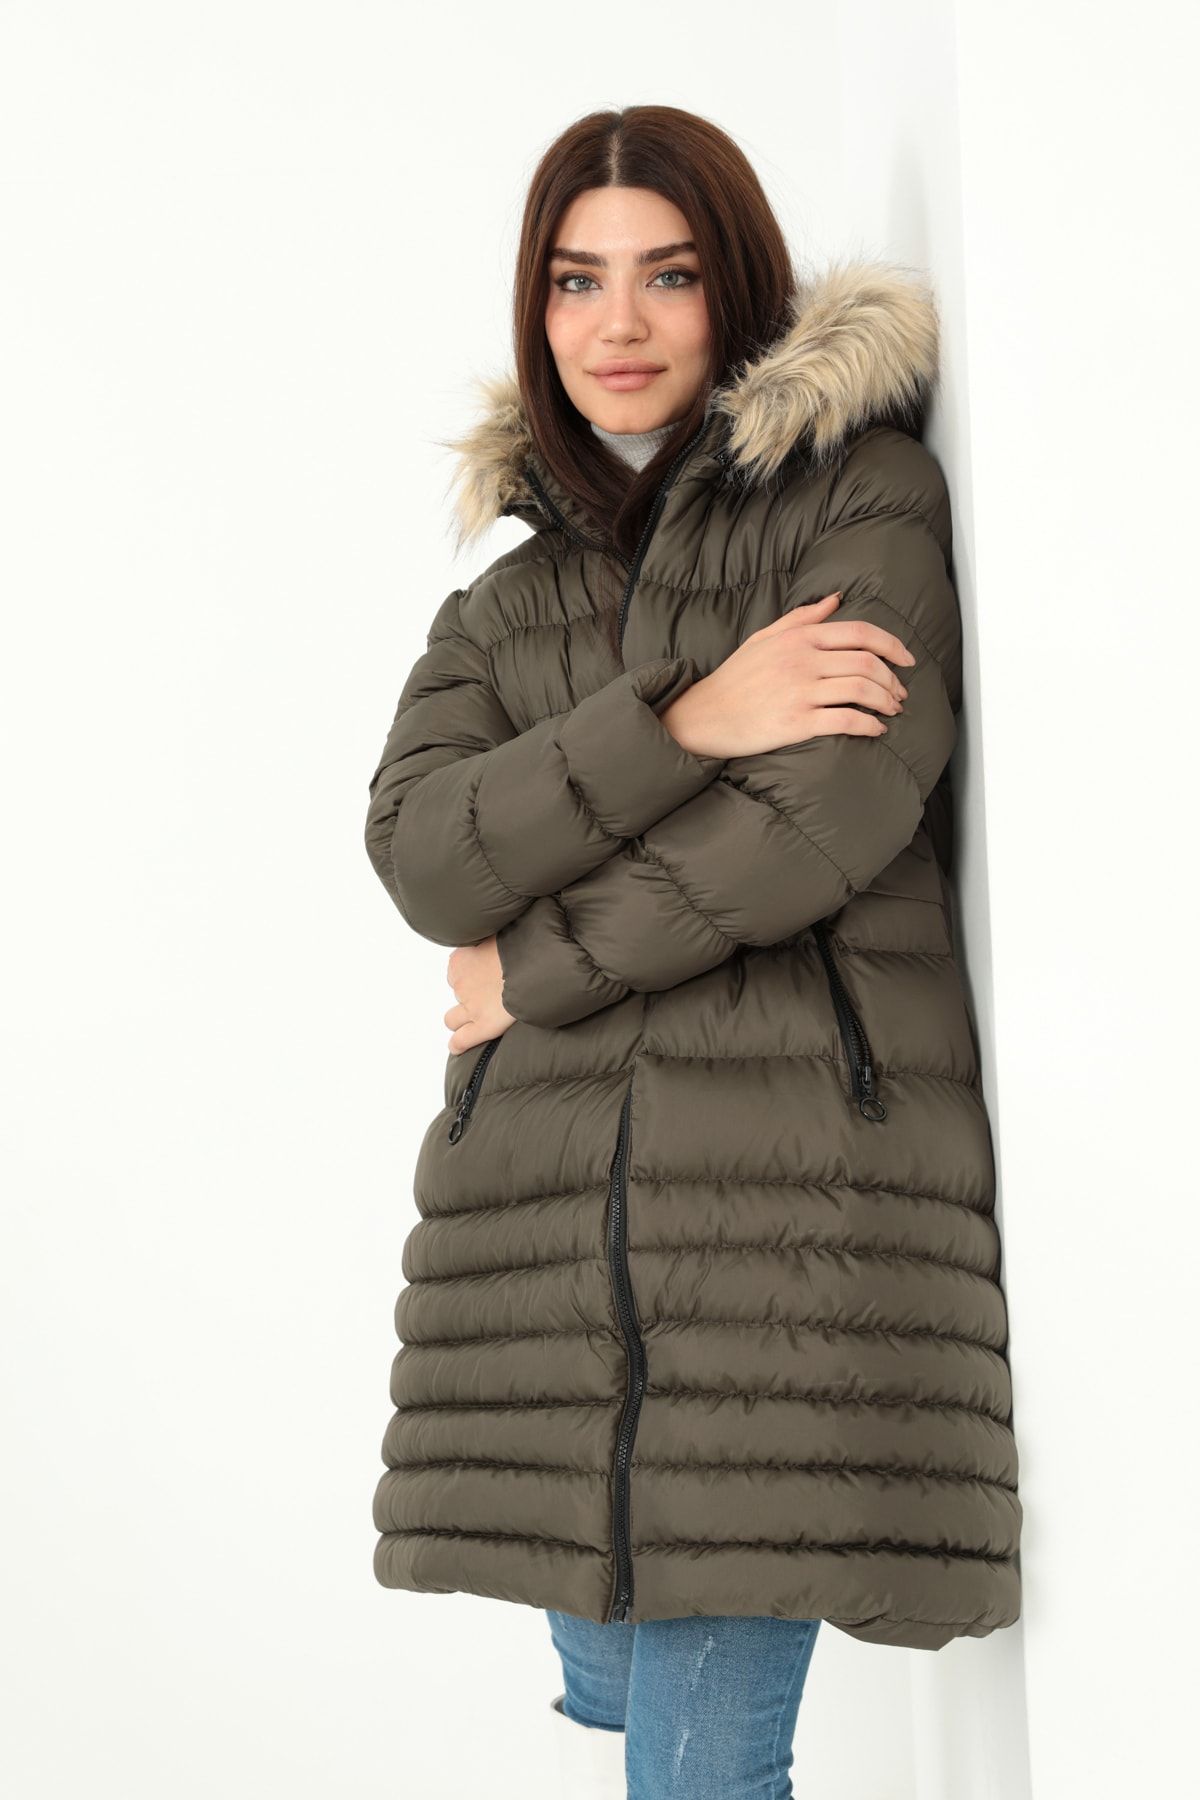 ModaPlaza Women's Puffer Coat 5010 - Trendyol